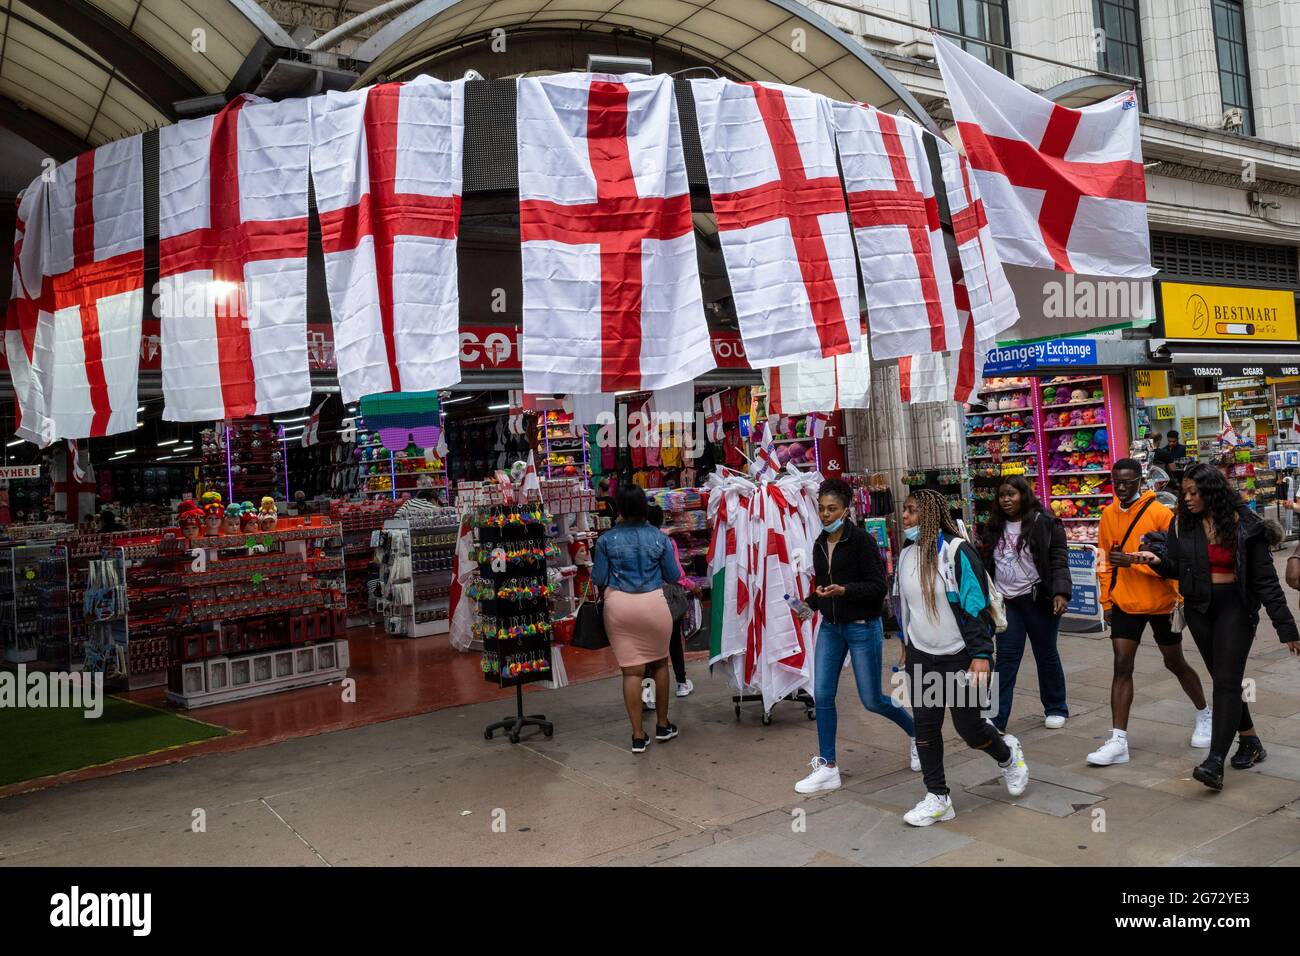 Londra, Regno Unito. 10 luglio 2021. Inghilterra bandiere in vendita al  pubblico a Piccadilly Circus in vista della finale di Euro 2020 tra Italia  e Inghilterra domani sera Wembley Stadium. E' la